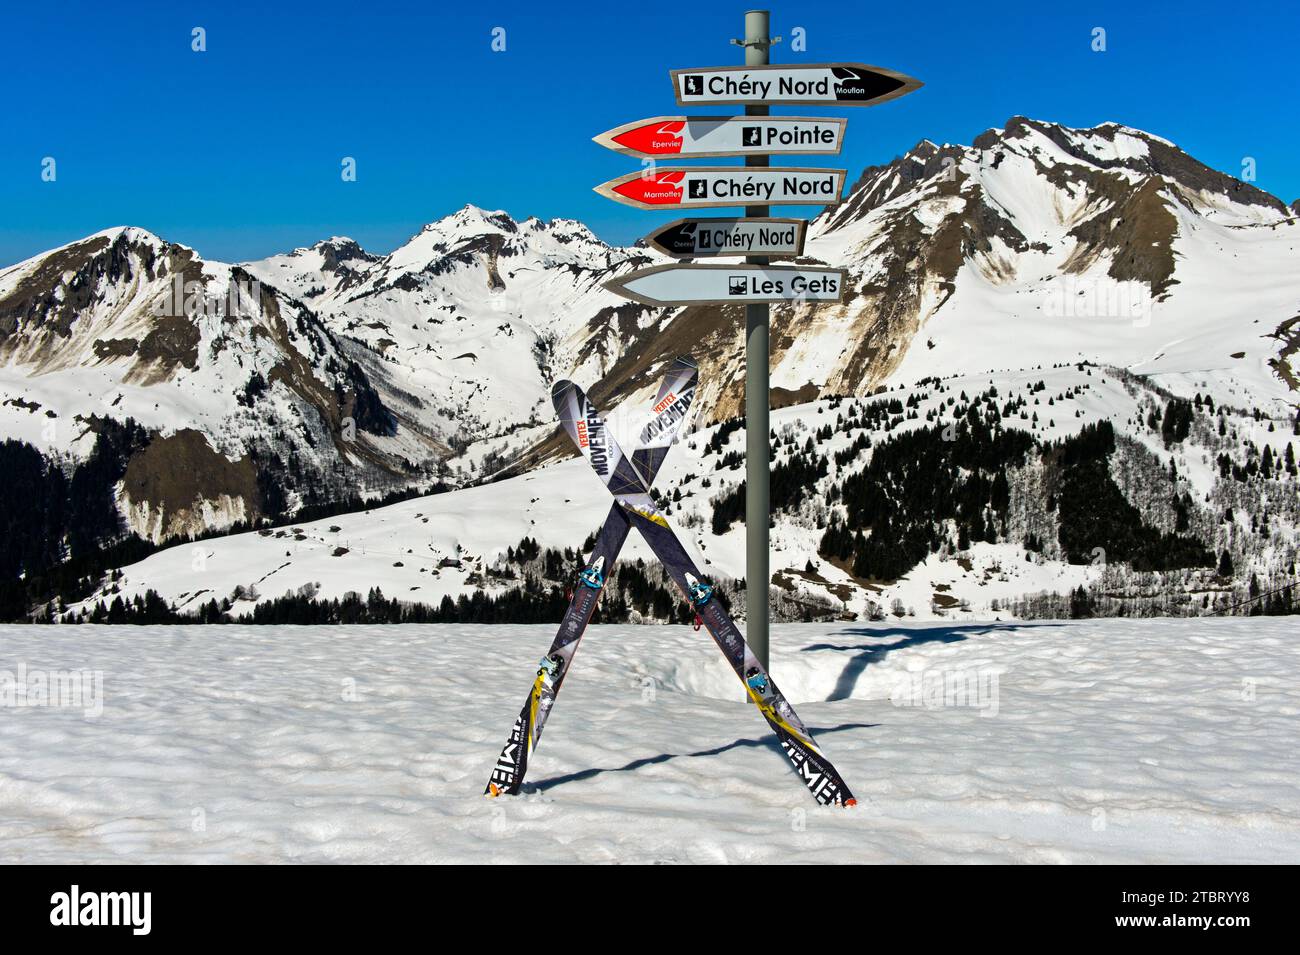 Skis de randonnée croisés devant un panneau sur le sommet du Mont Chéry, Chablais, les Gets, haute-Savoie, France Banque D'Images